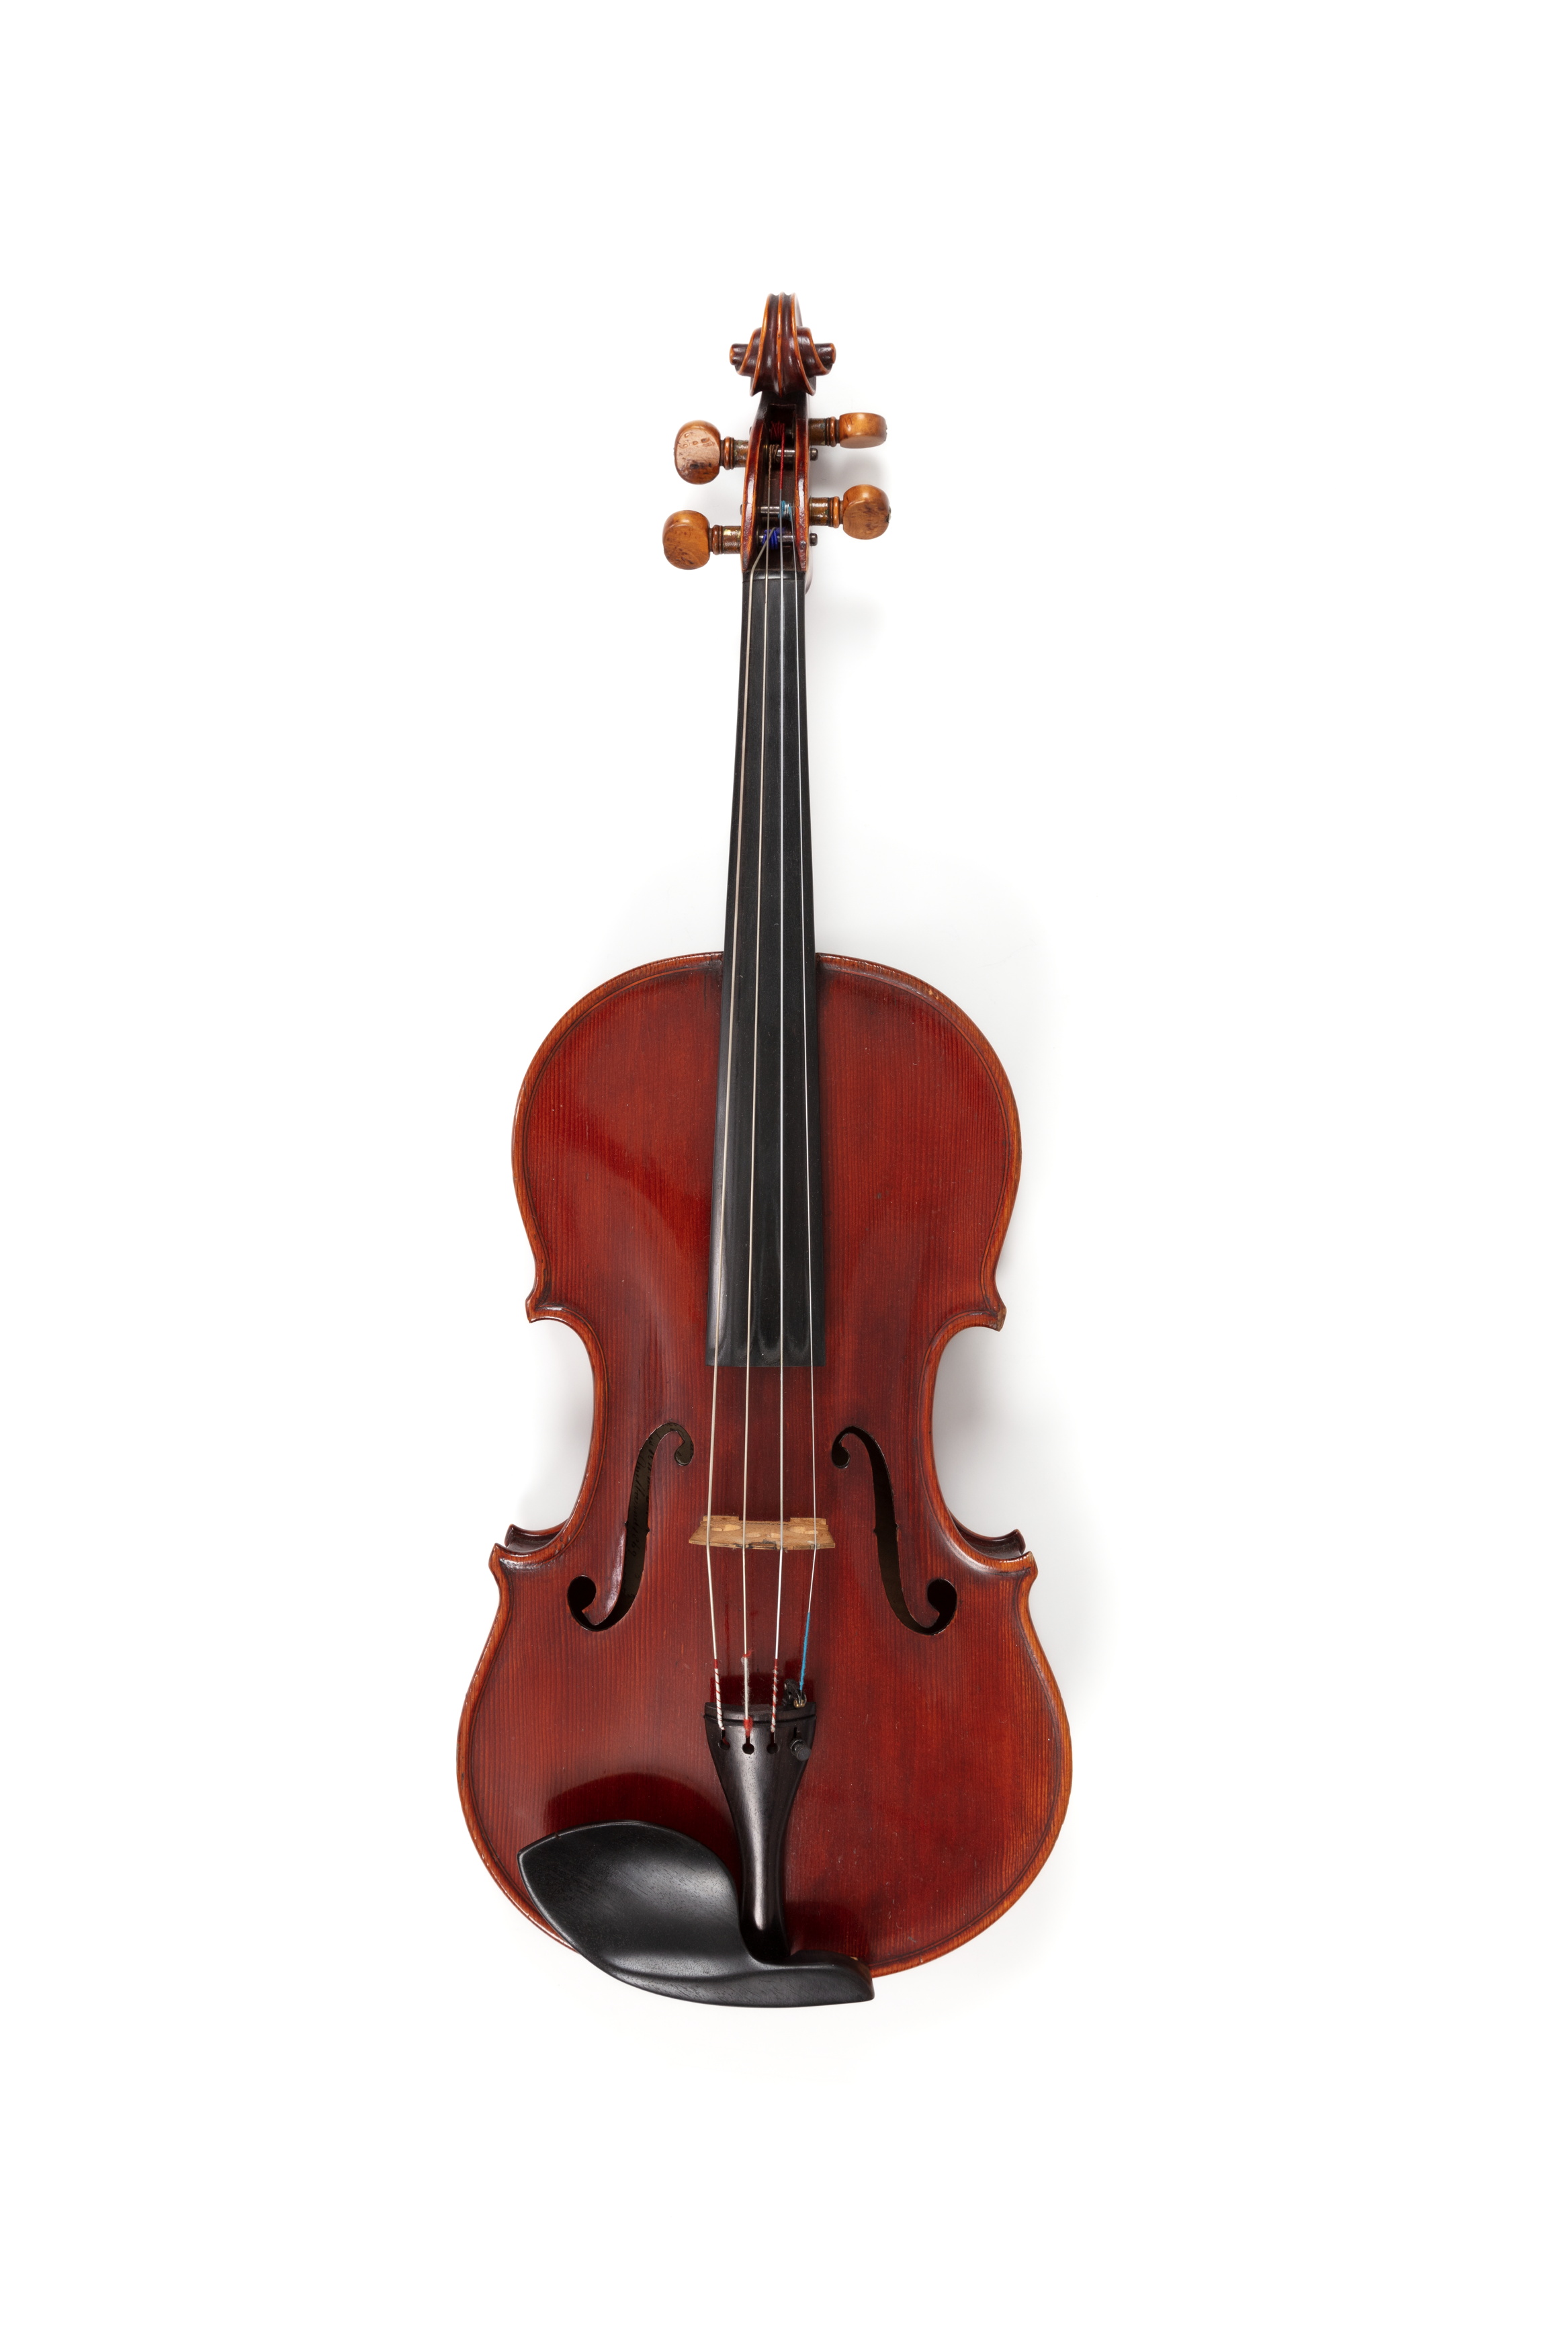 Viola made by John Devereux